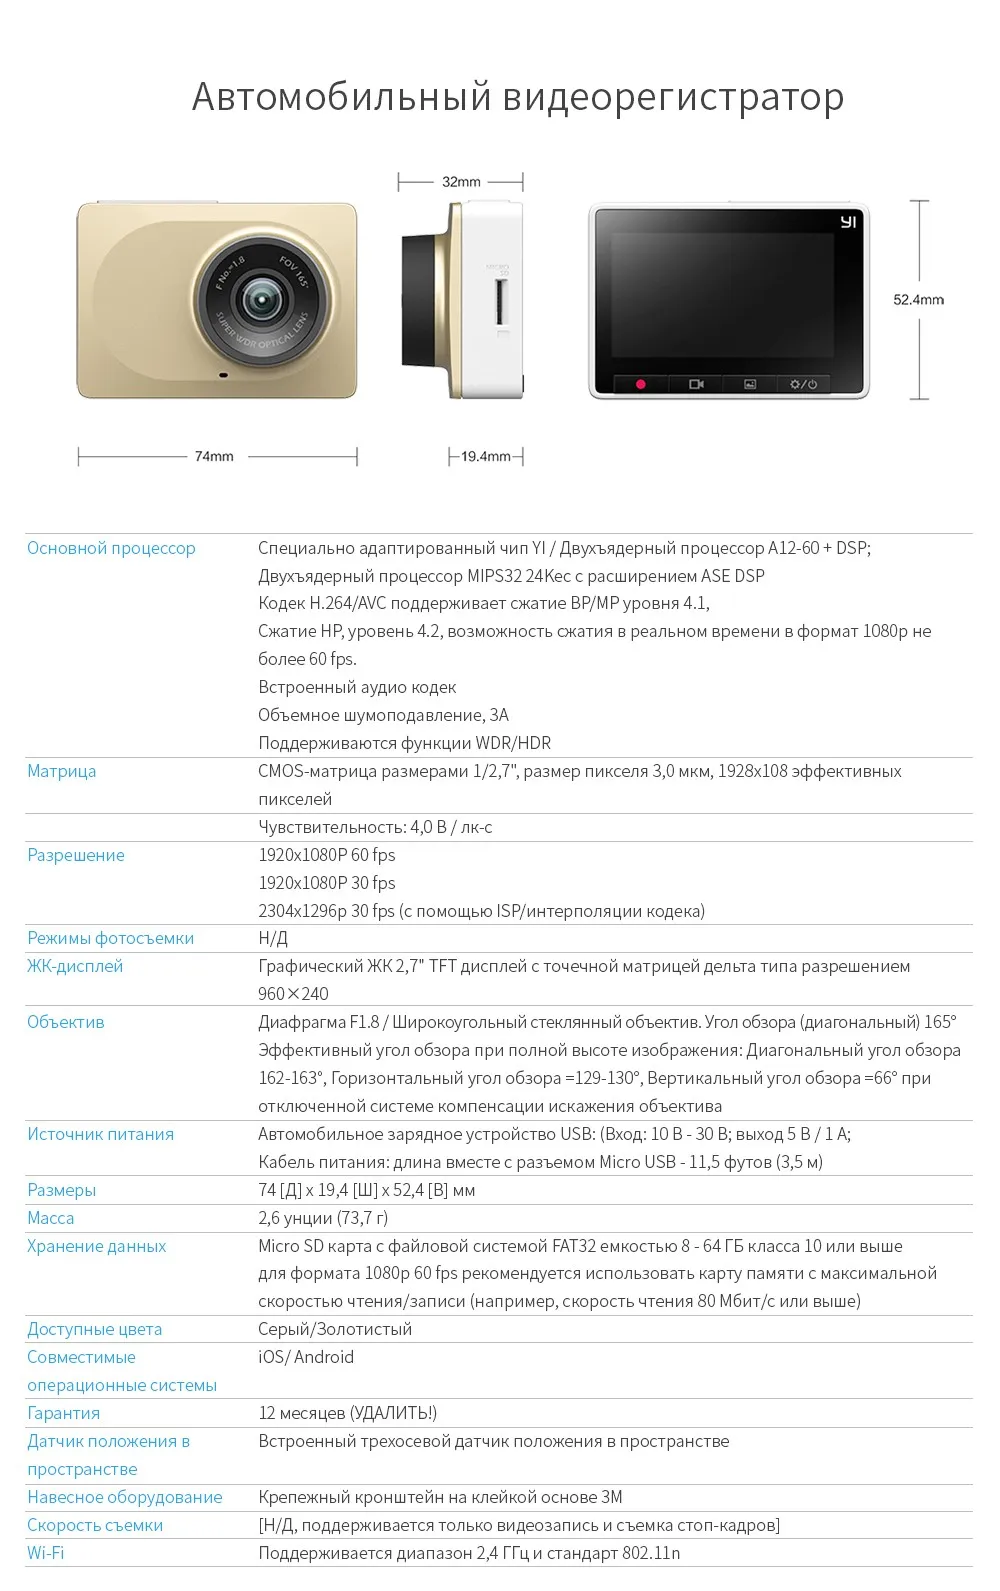 Видеорегистратор YI Smart Dash Camera HD | Беспроводное подключение Wi-Fi| Угол обзора 165 градусов | Запись видео 1920×1080 при 60 к/с | Ночной режим | Хранение данных microSD(microSDXC) до 64 Гб